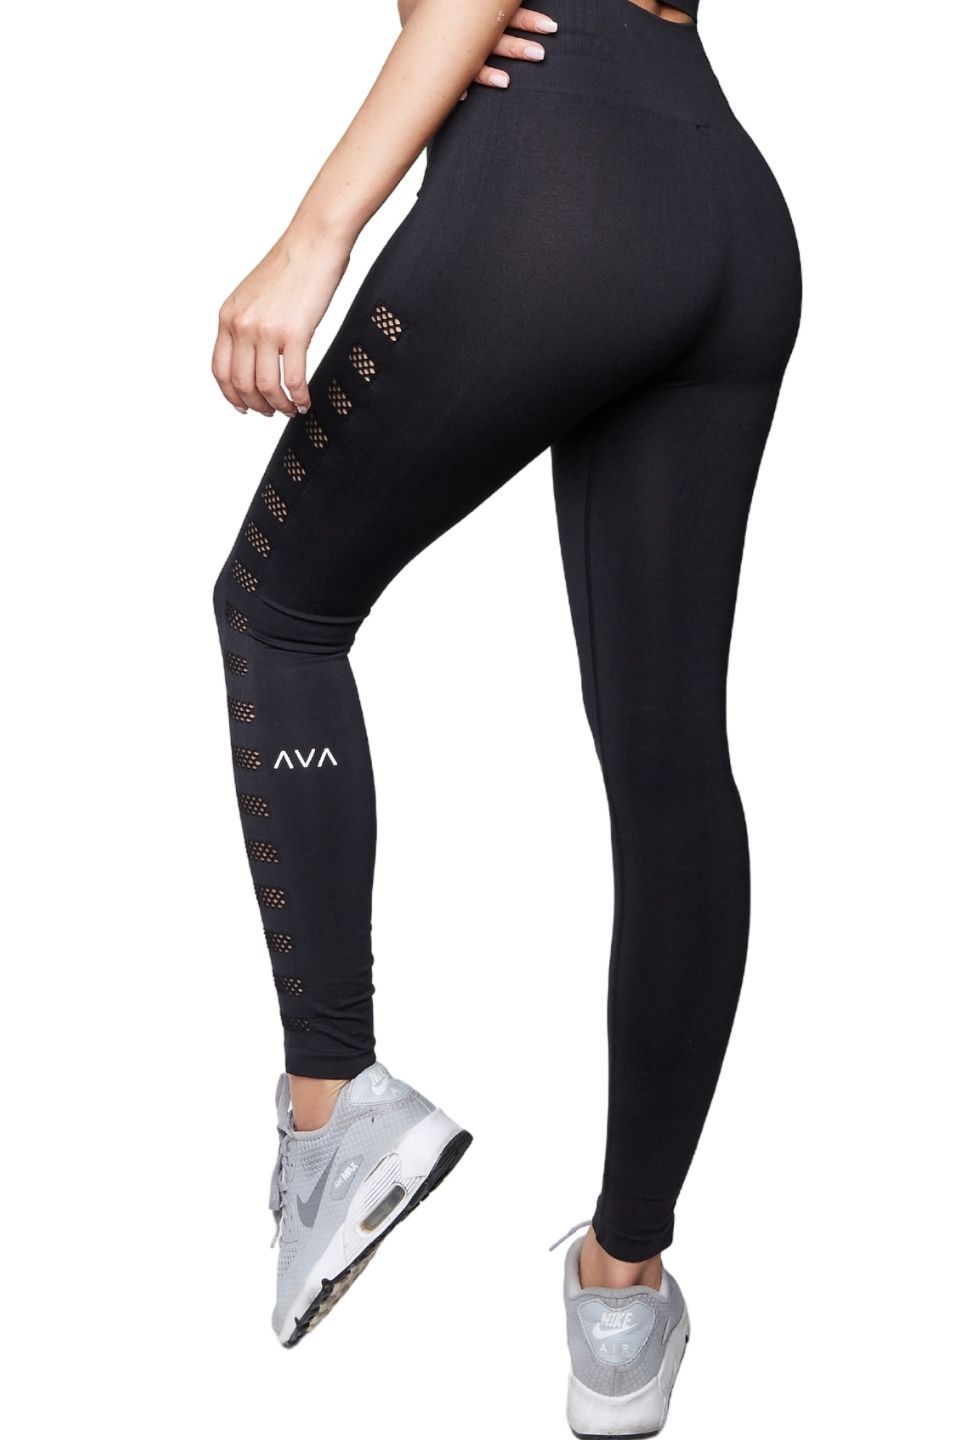 Daub Active Full Length Ava Yoga Leggings – Seafoam/Black Mesh